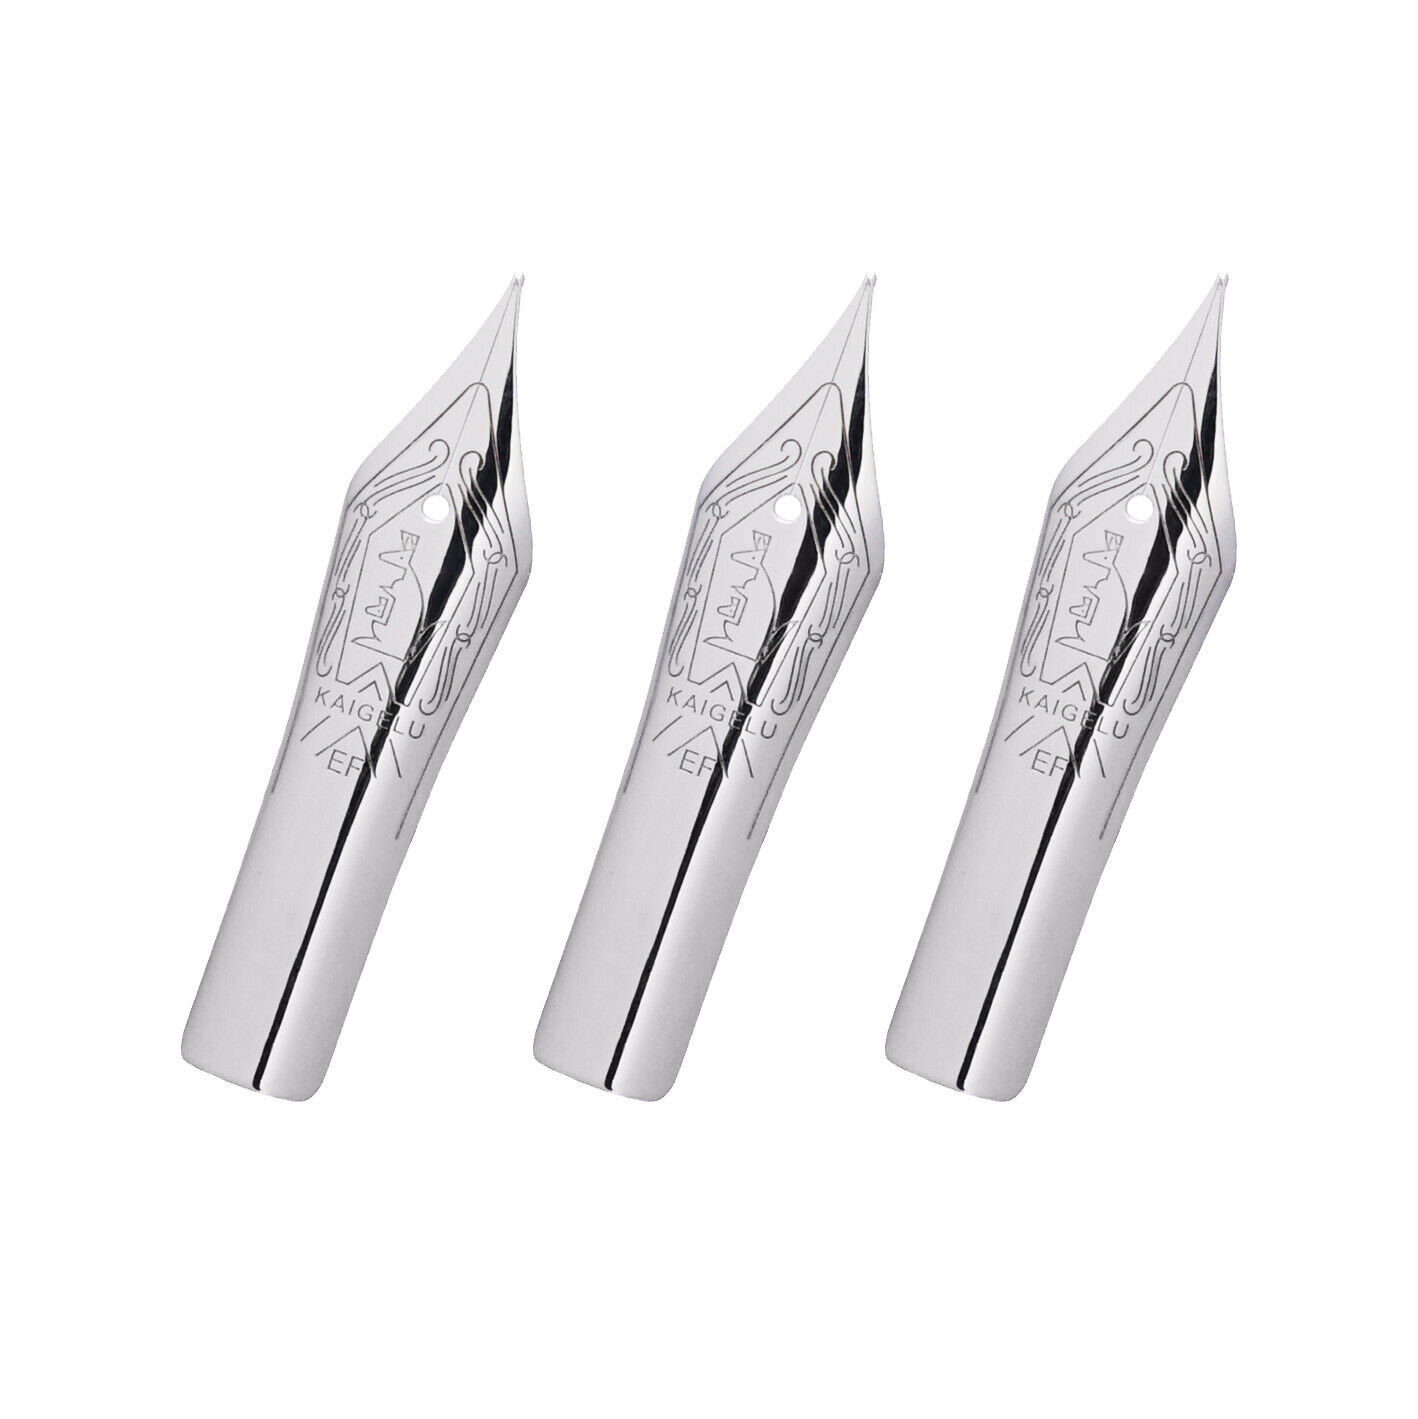 3PCS Kaigelu Fountain Pen Nibs #6 Nib Silver EF/F/M for Jinhao 100 Yongsheng 699